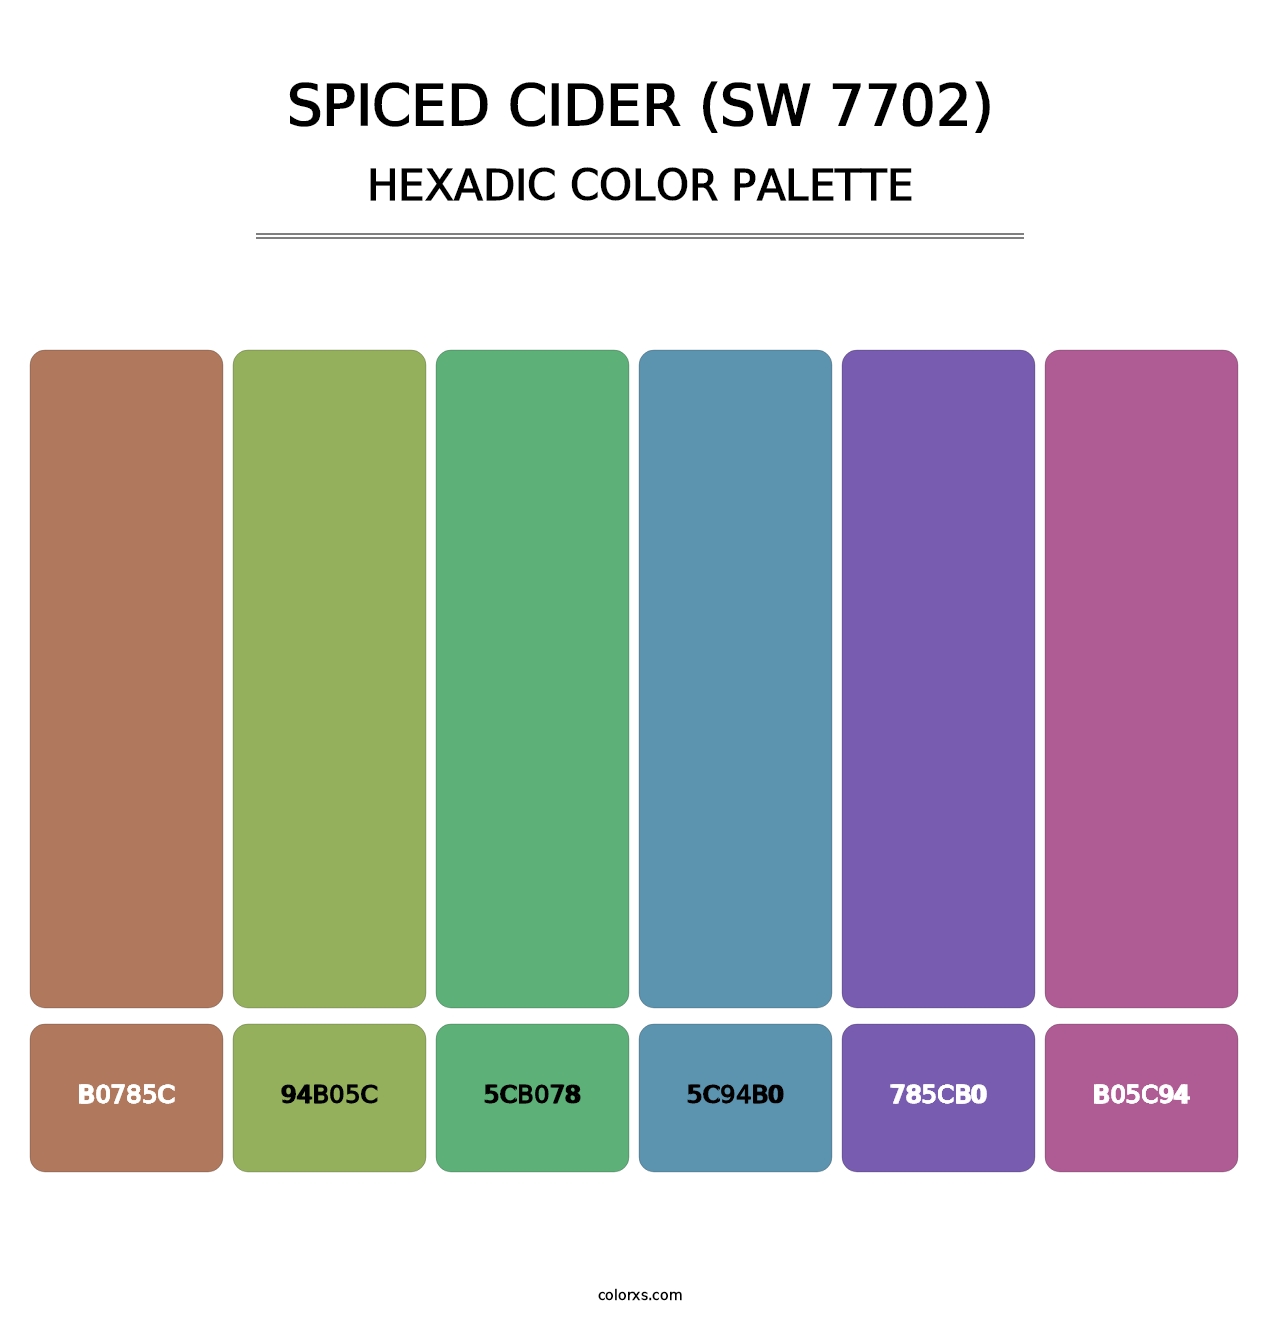 Spiced Cider (SW 7702) - Hexadic Color Palette